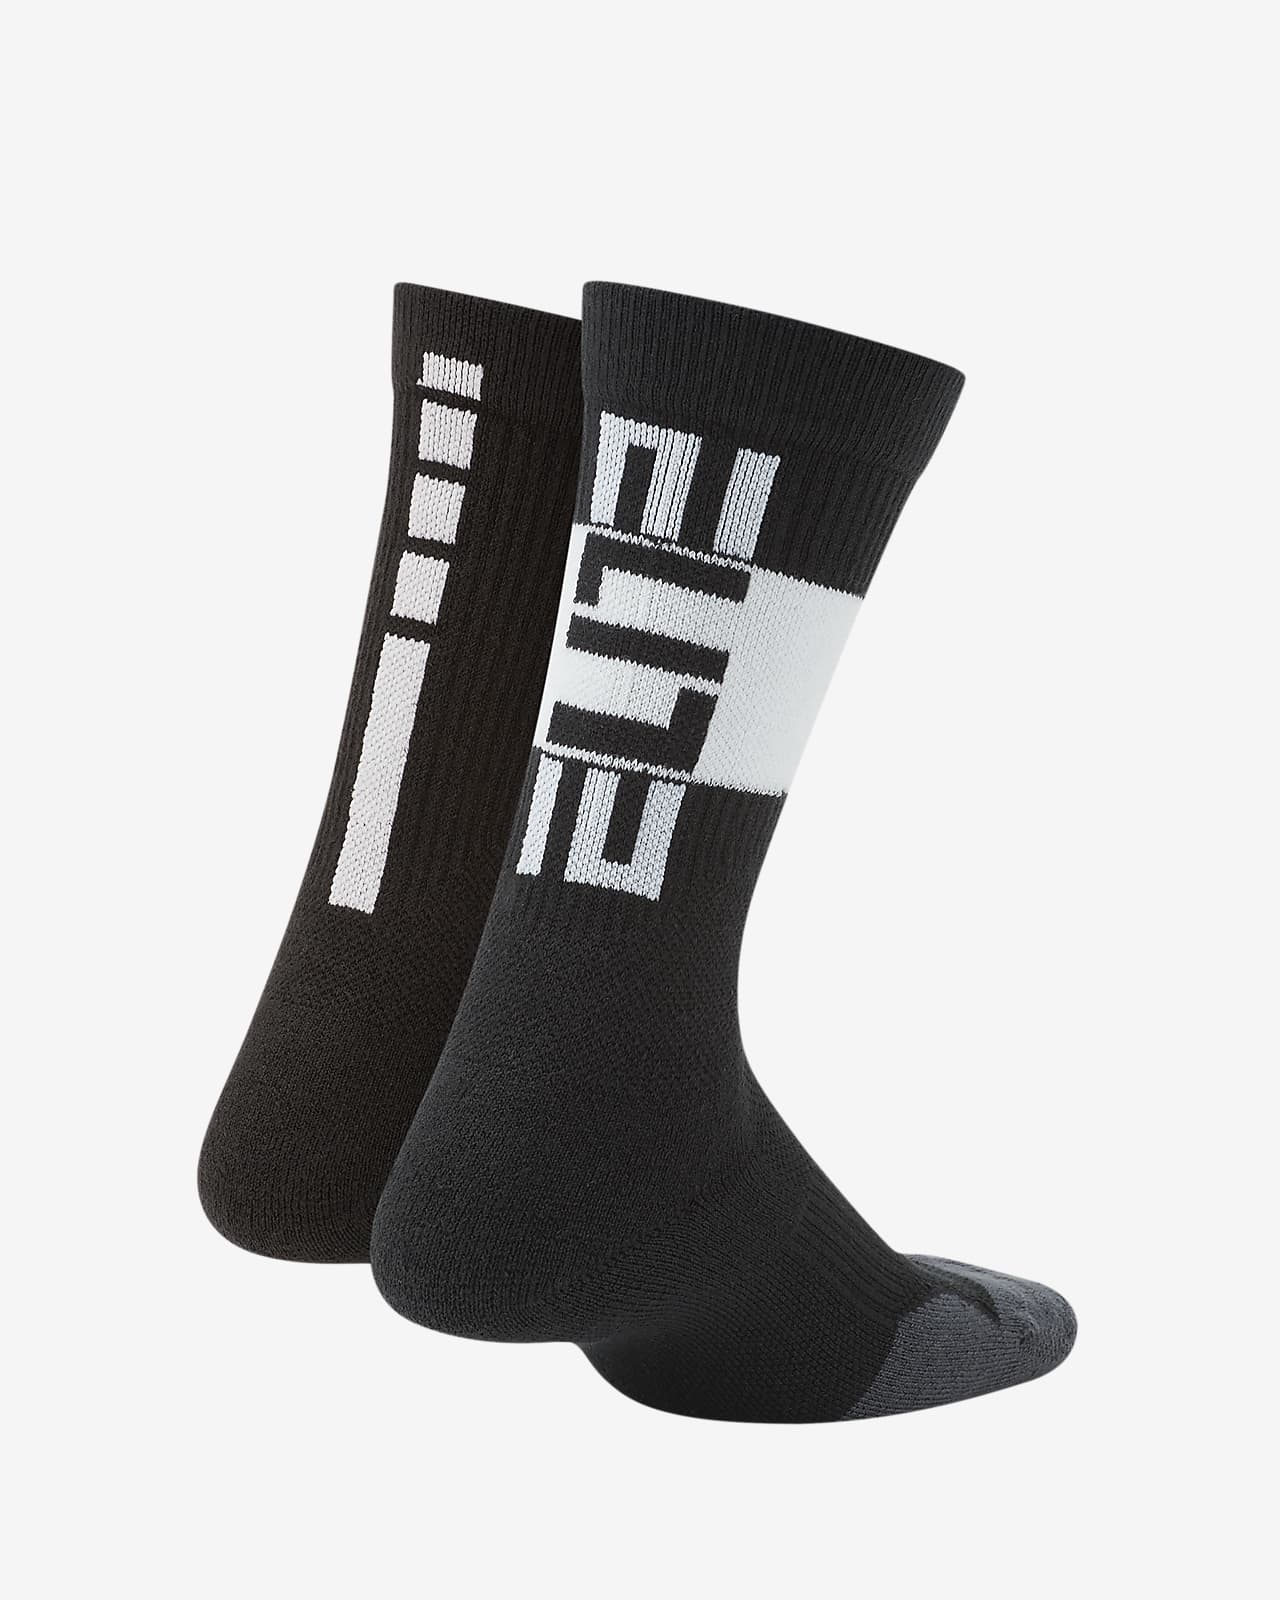 white nike elite socks